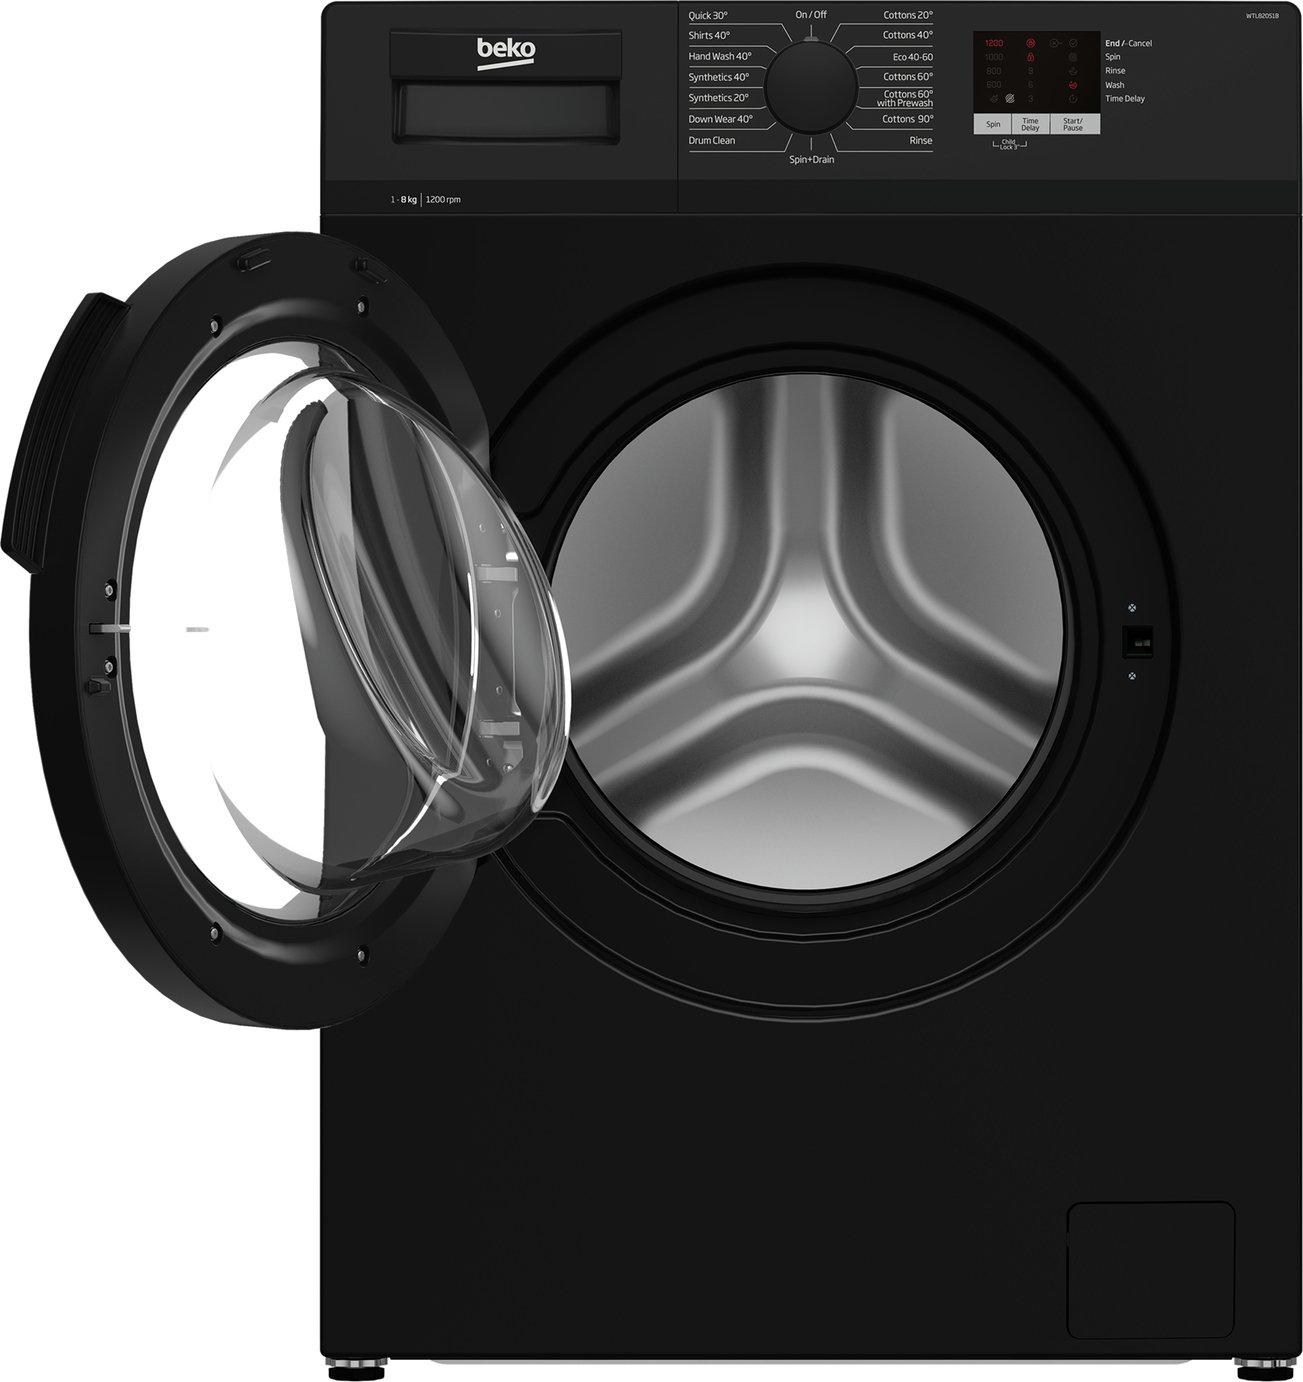 Beko WTL82051B 8KG 1200 Spin Washing Machine Review